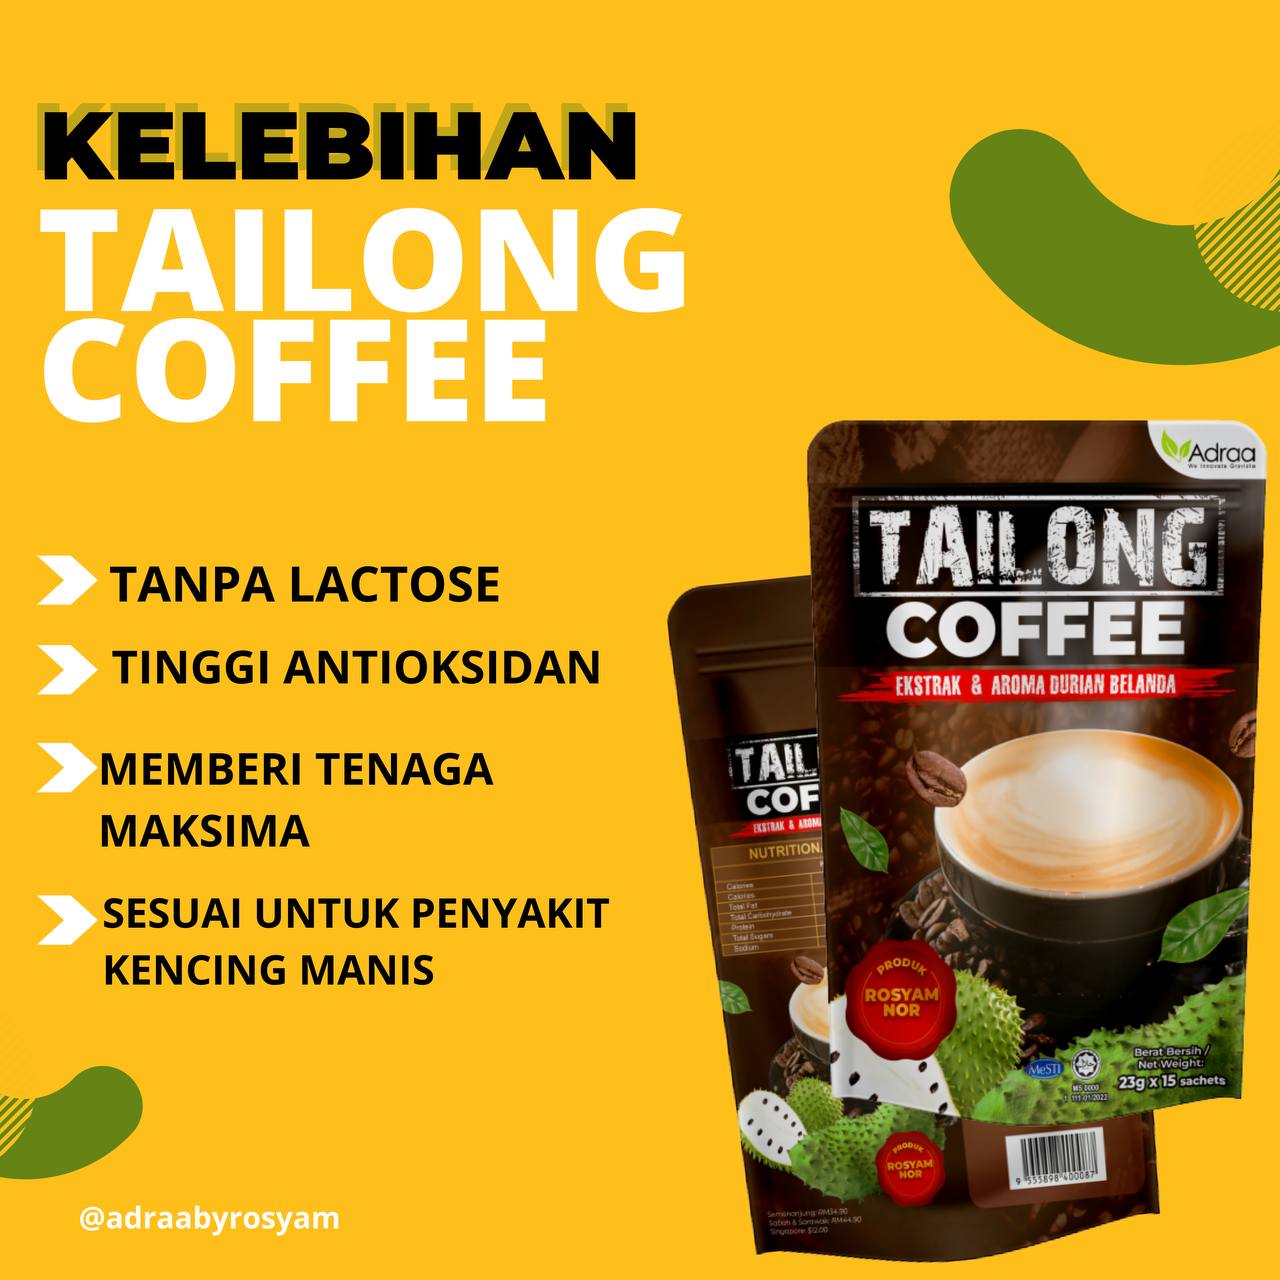 Adraa, Tailong Coffee, 23 g x 15 sachets